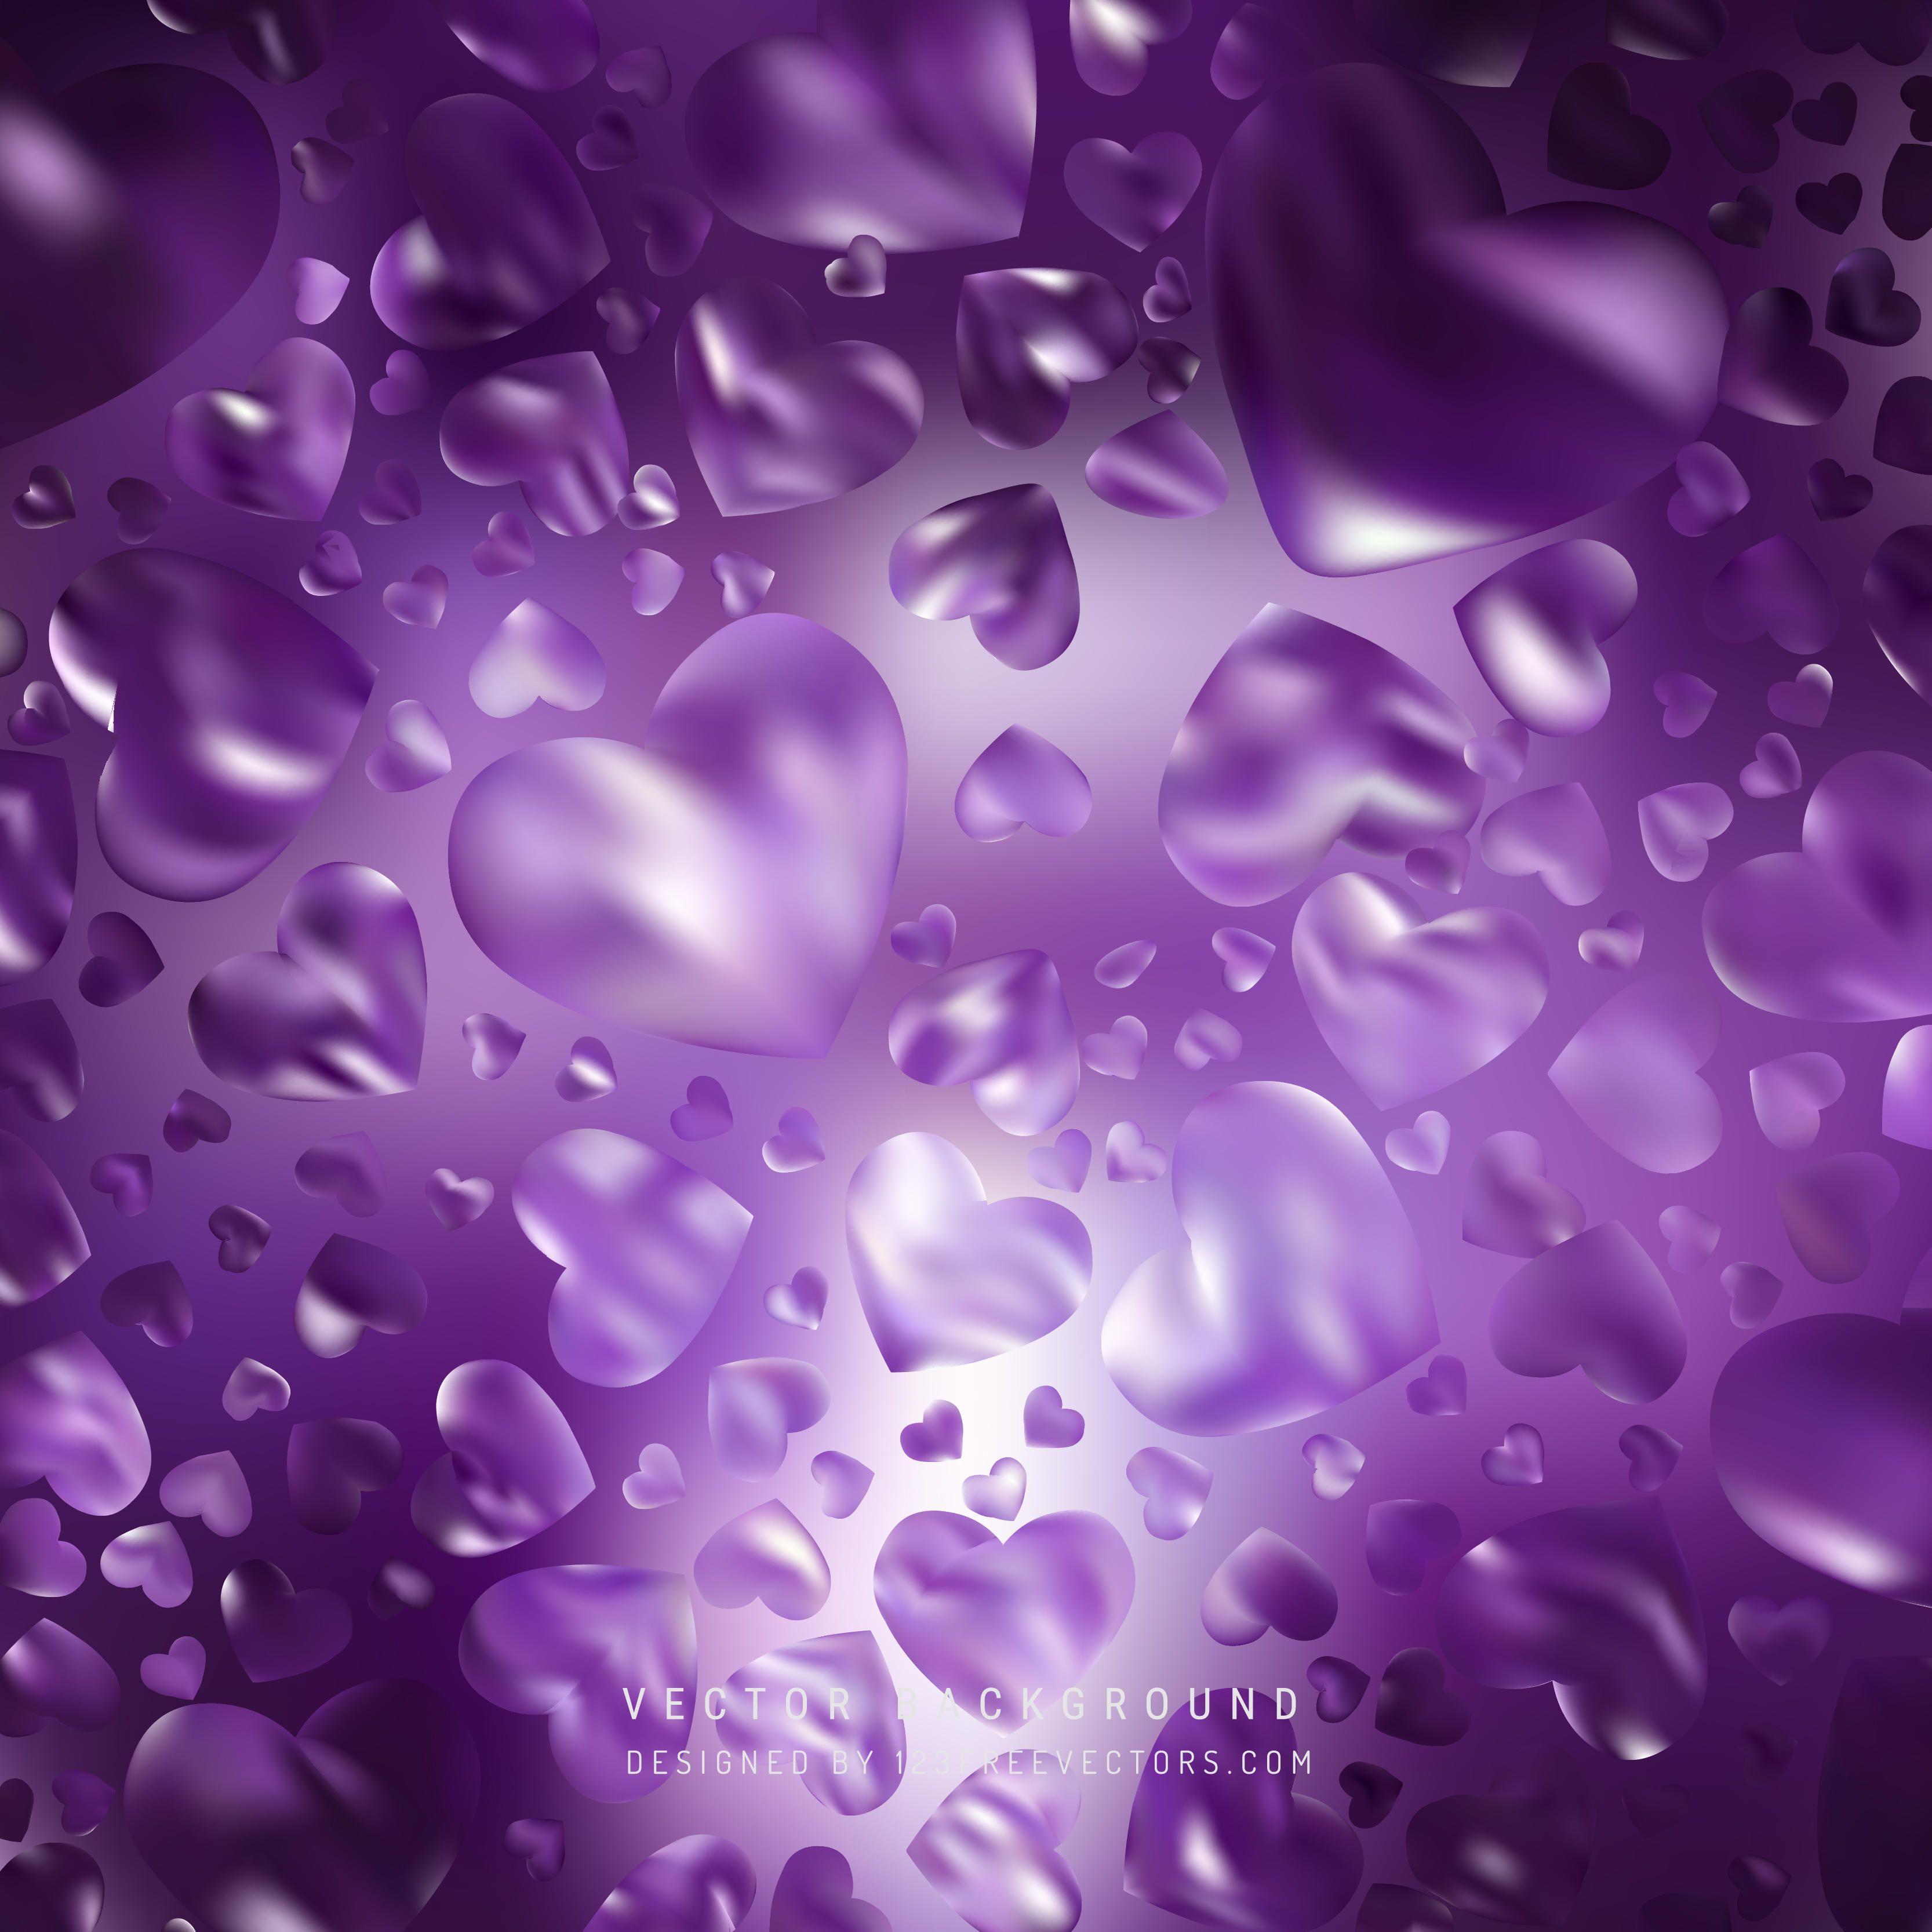 Purple Background Vectors. Download Free Vector Art & Graphics